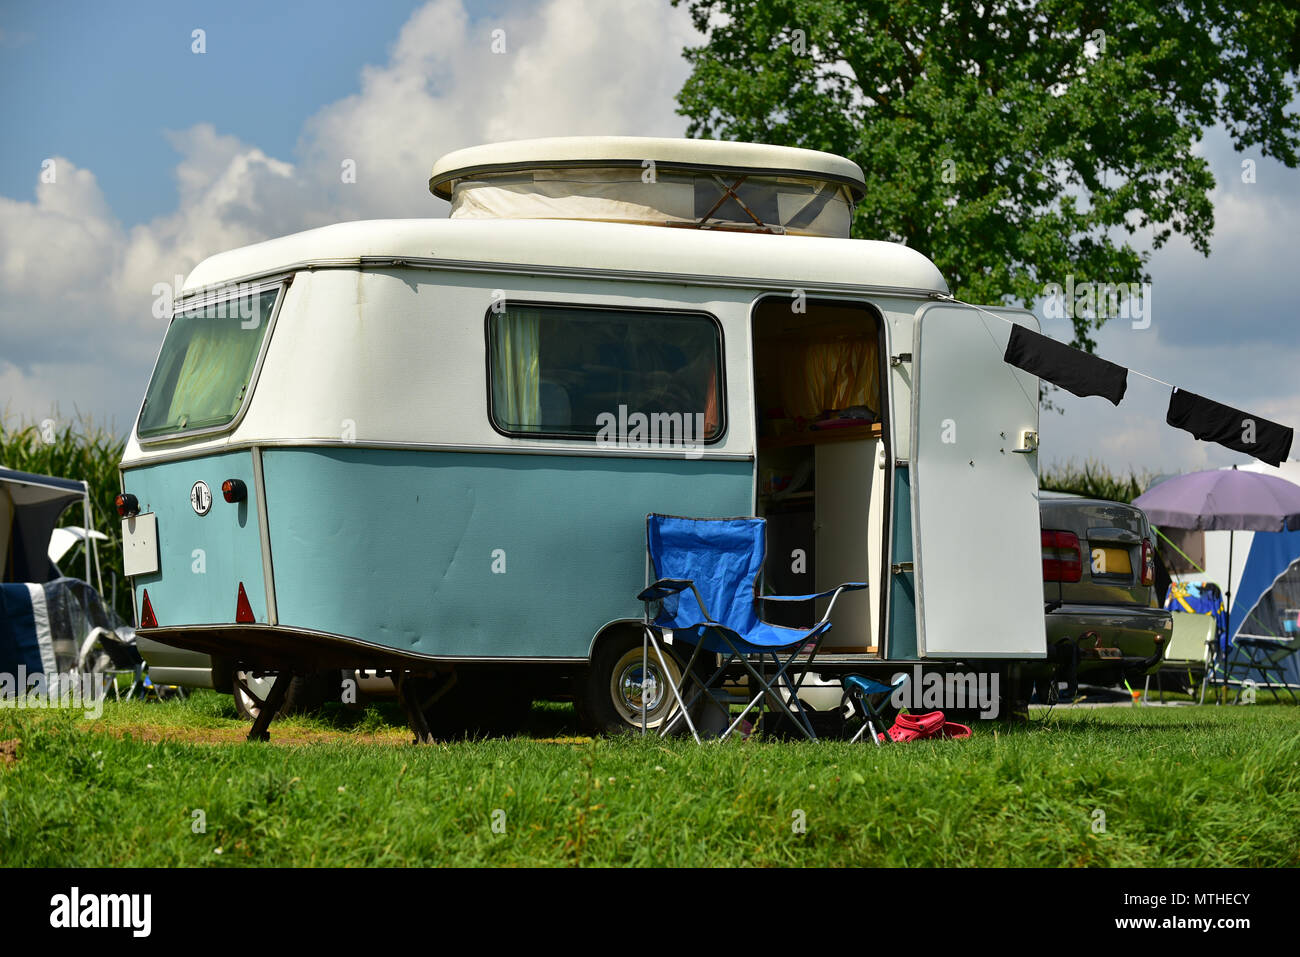 Vintage caravan on a campsite Stock Photo